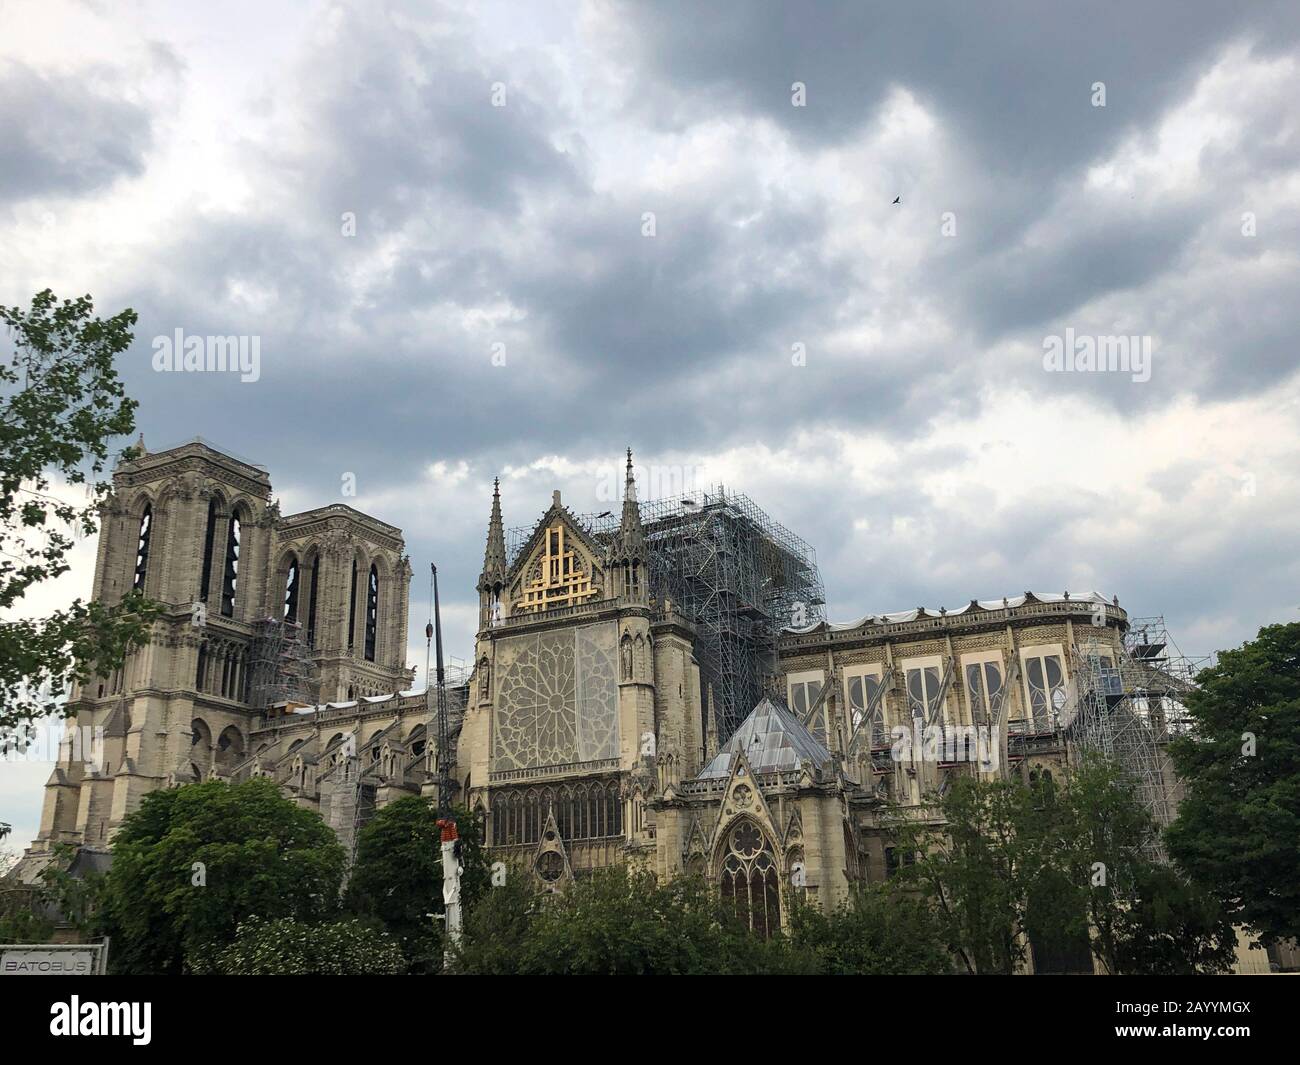 Paris, Frankreich - 05.23.2019: Kathedrale Notre Dame in Paris befindet sich im Bau nach dem Großbrand, der das Dach der Kathedrale zerstörte Stockfoto